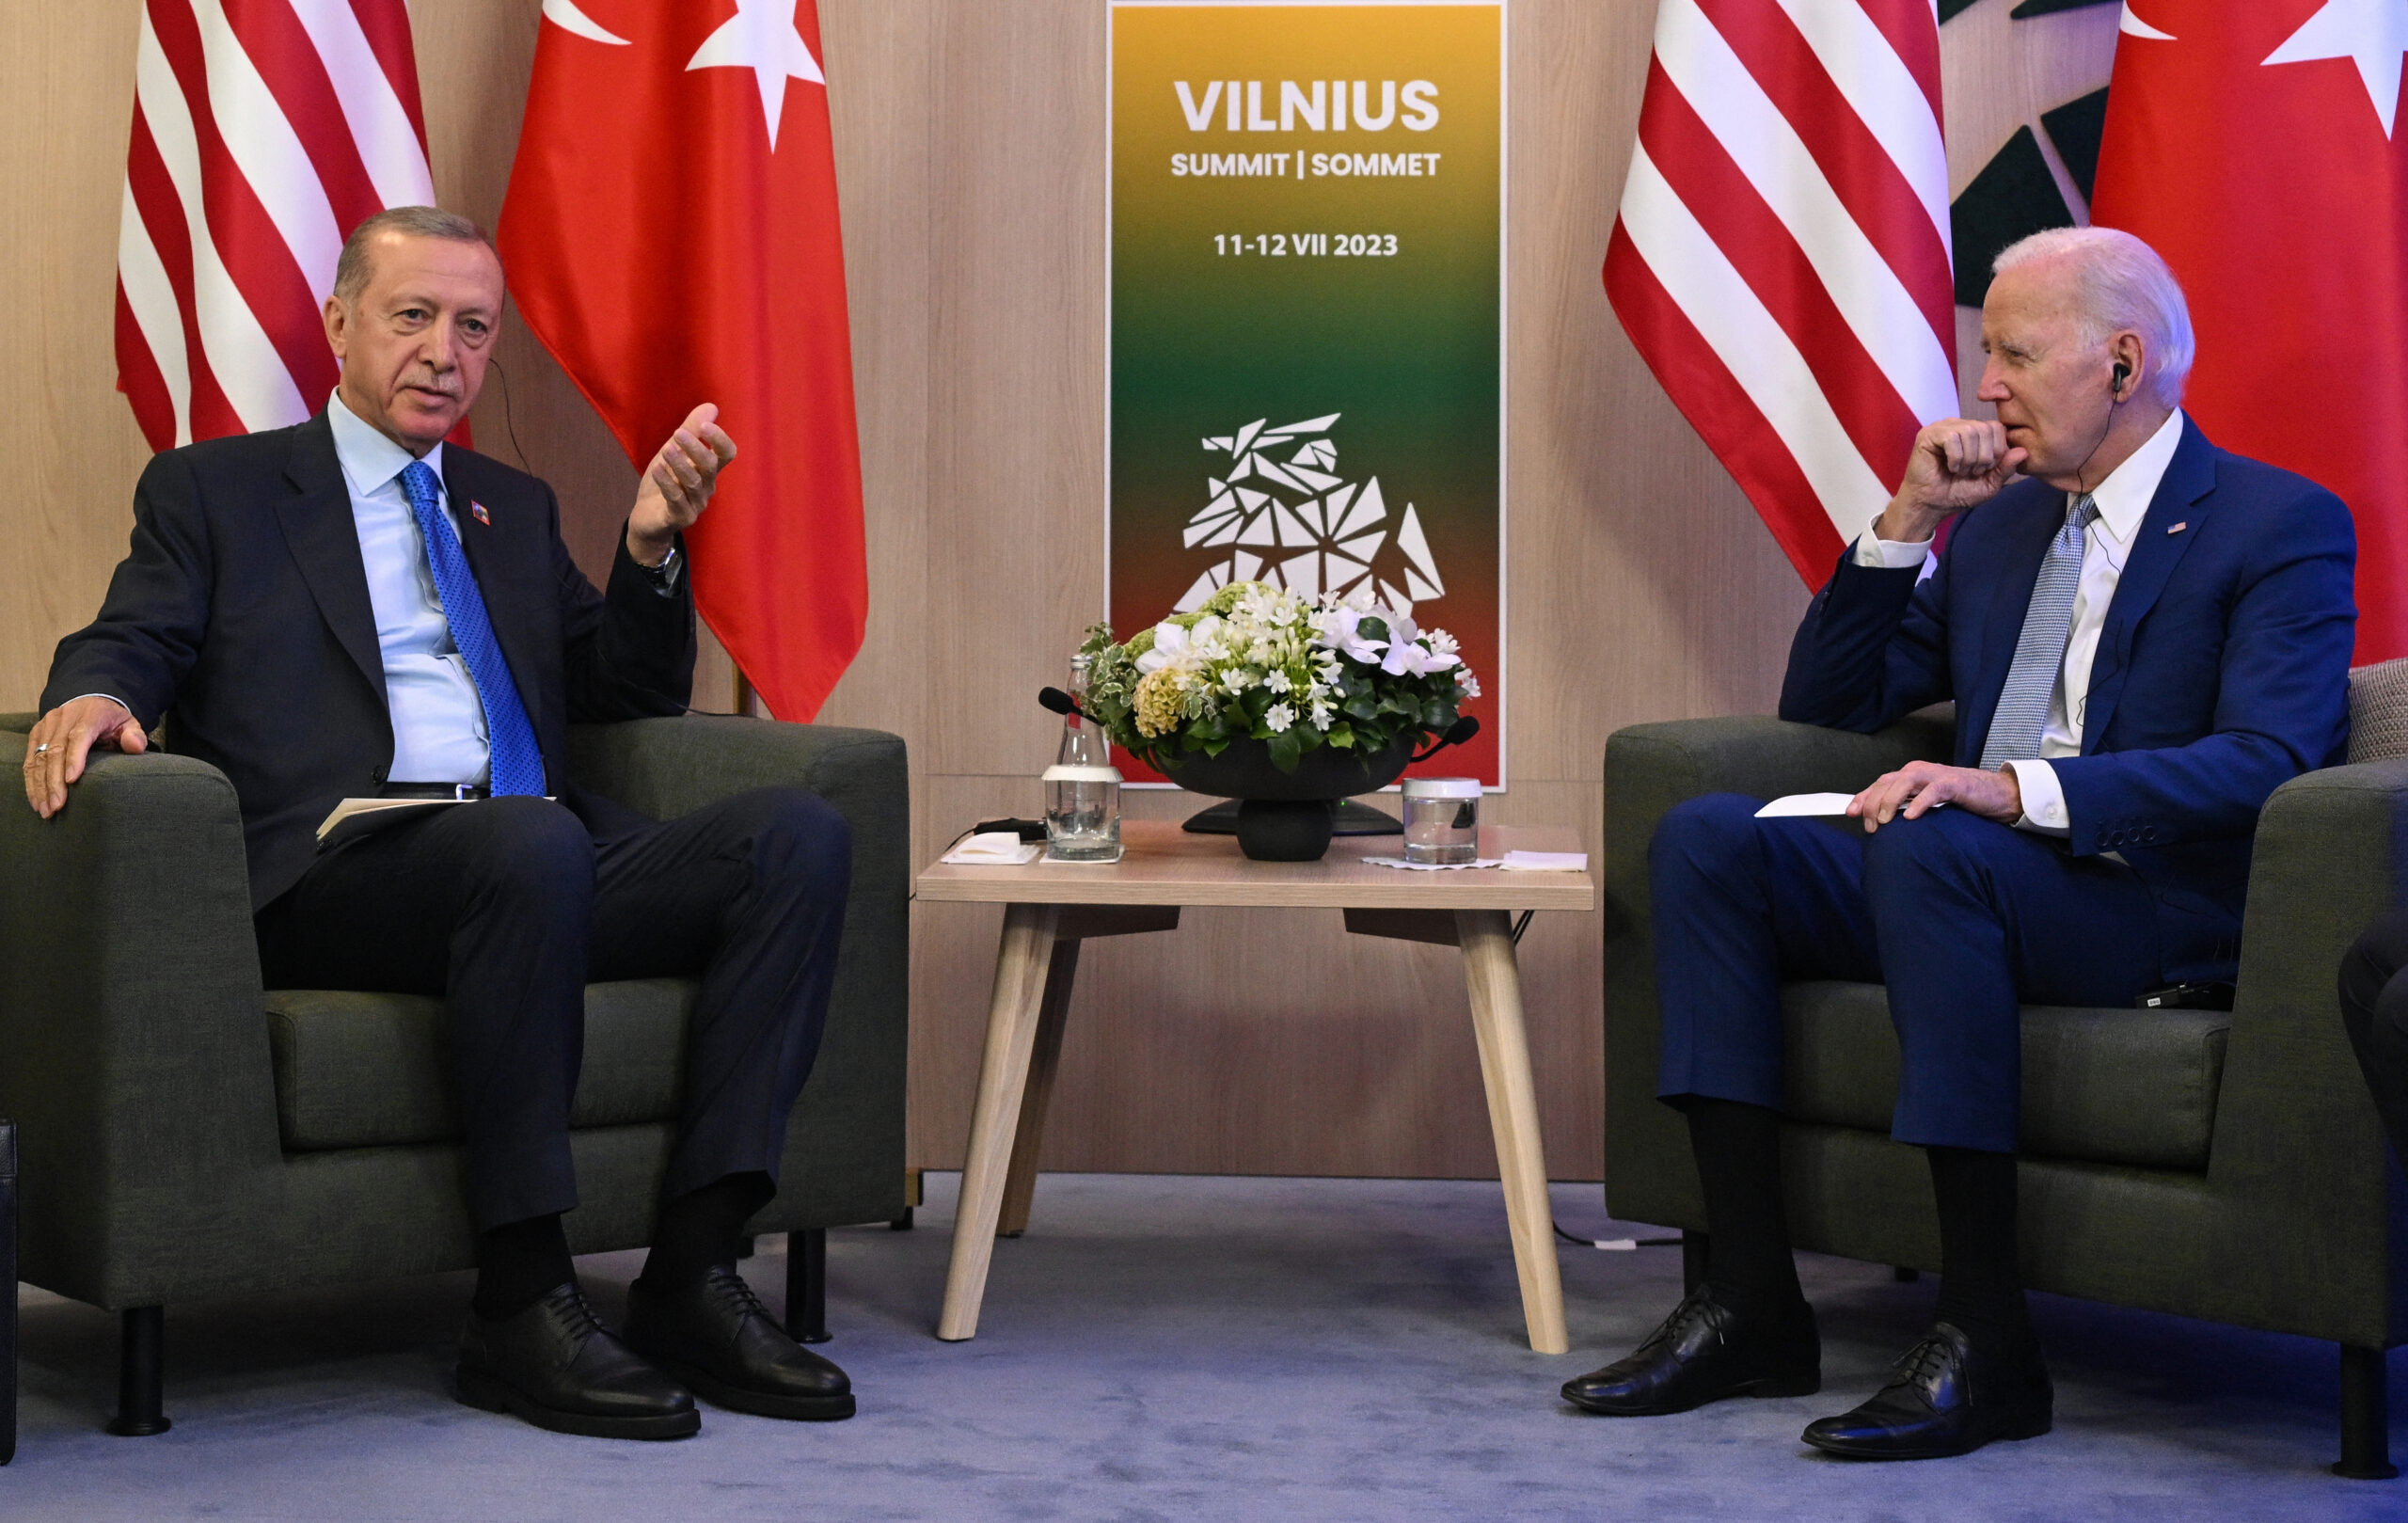 TRT Haber – Ερντογάν μετά τη συνάντηση με Μπάιντεν: «Είναι πλέον καιρός για διαβουλεύσεις σε επίπεδο αρχηγών κρατών»